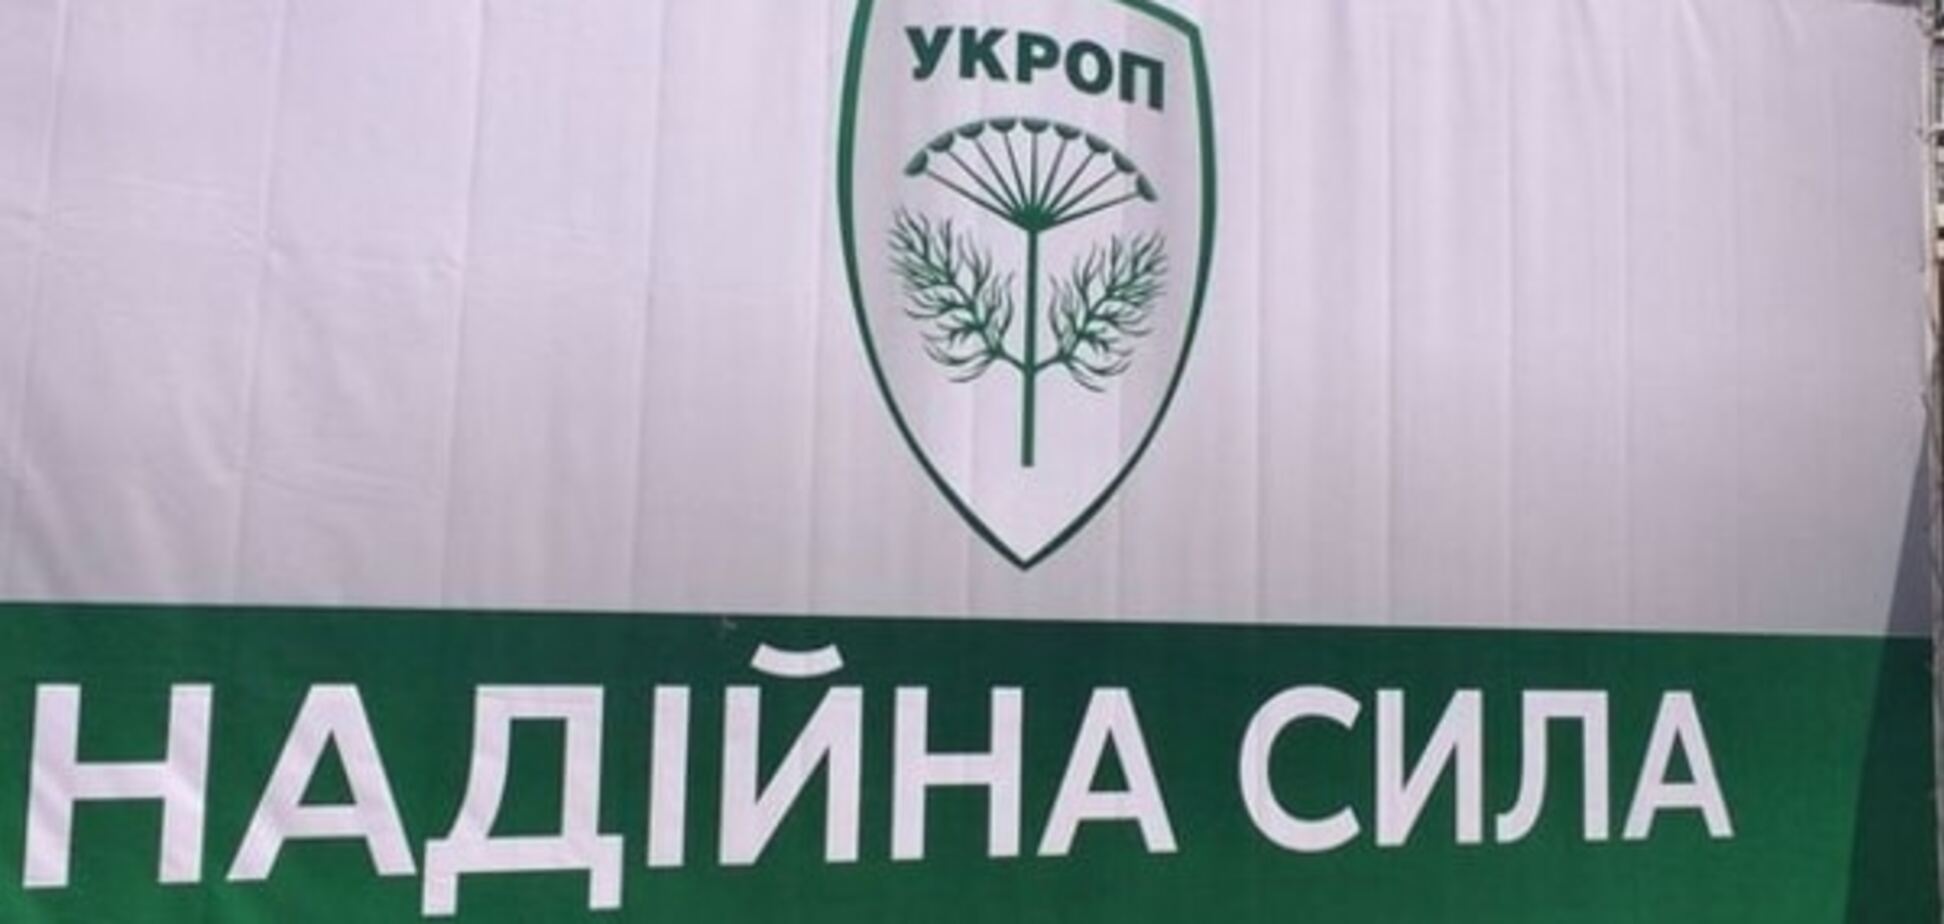 УКРОП примет участие в местных выборах 25 октября